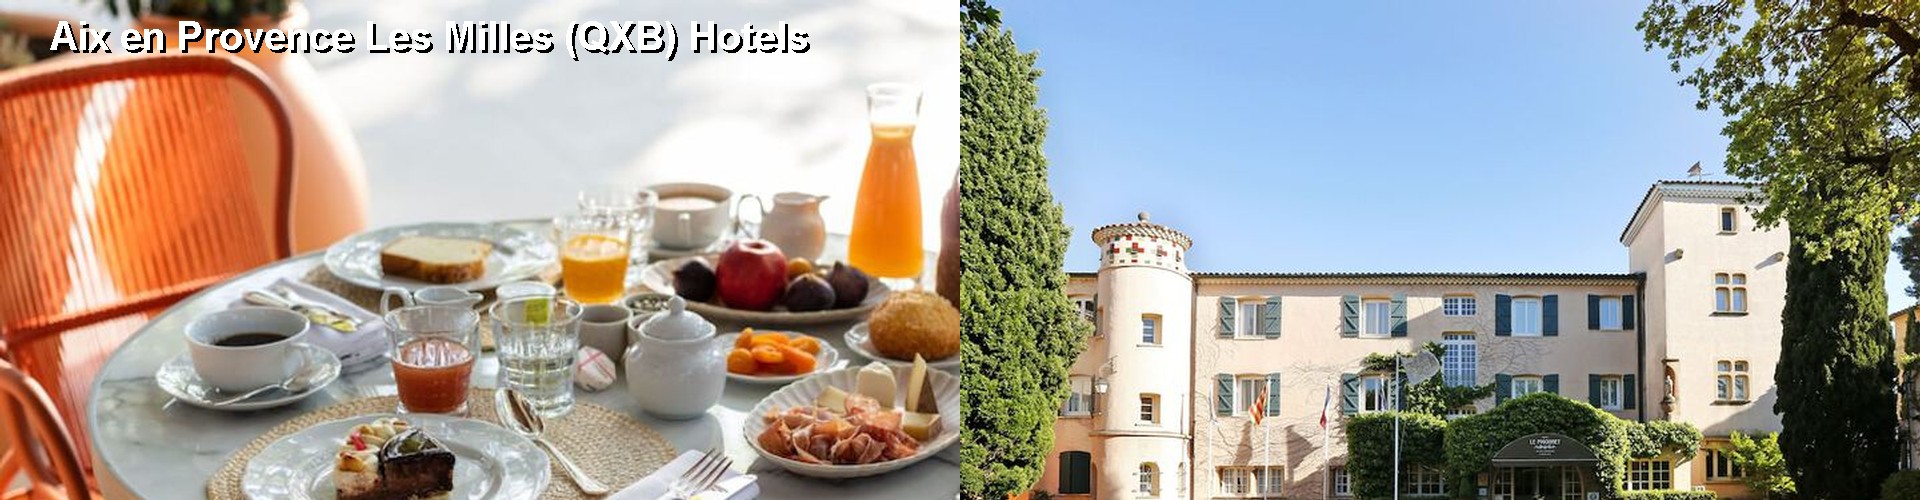 5 Best Hotels near Aix en Provence Les Milles (QXB)